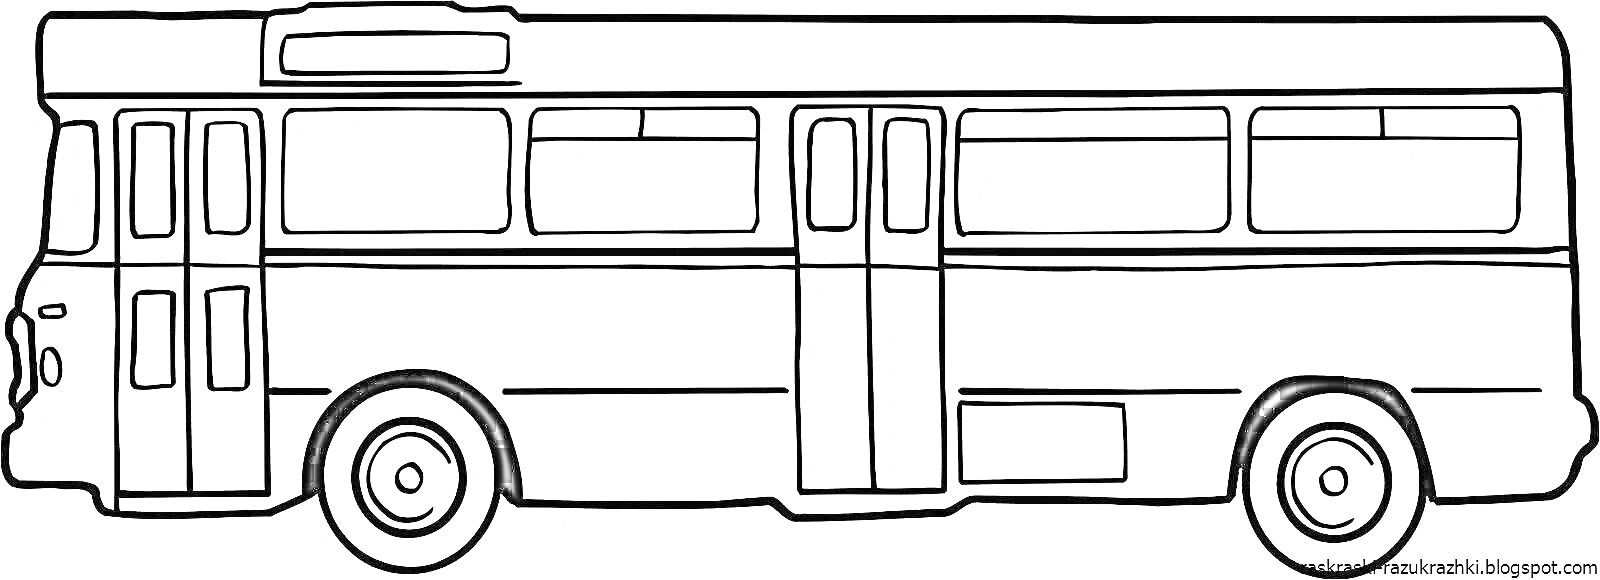 Раскраска Раскраска автобус с окнами и дверями